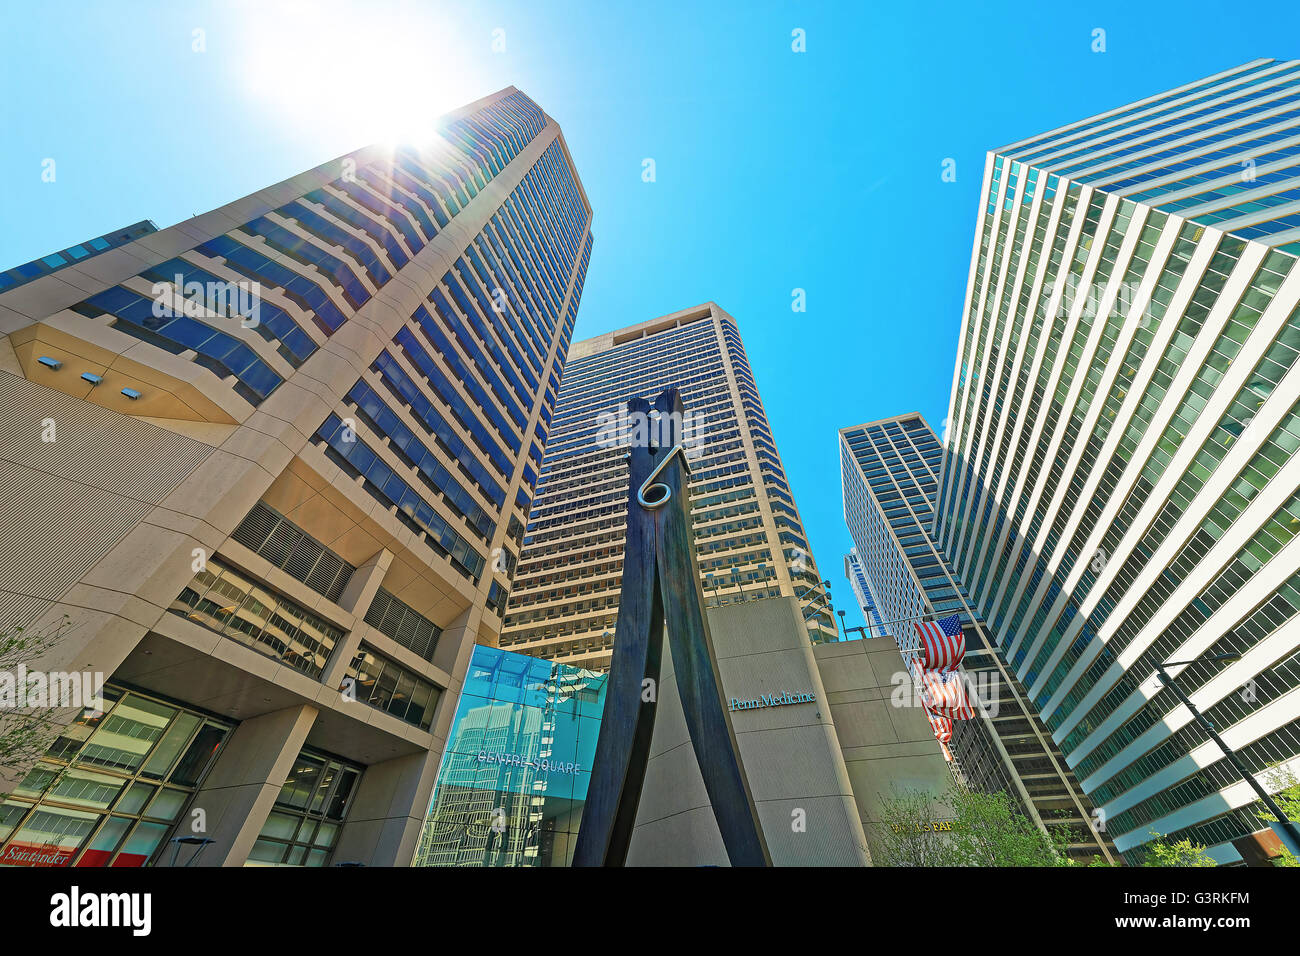 Philadelphie, USA - 4 mai 2015 : Clothespin sculpture et gratte-ciel du centre-ville de Philadelphie. New York, USA. Avec sun flare spécial Banque D'Images